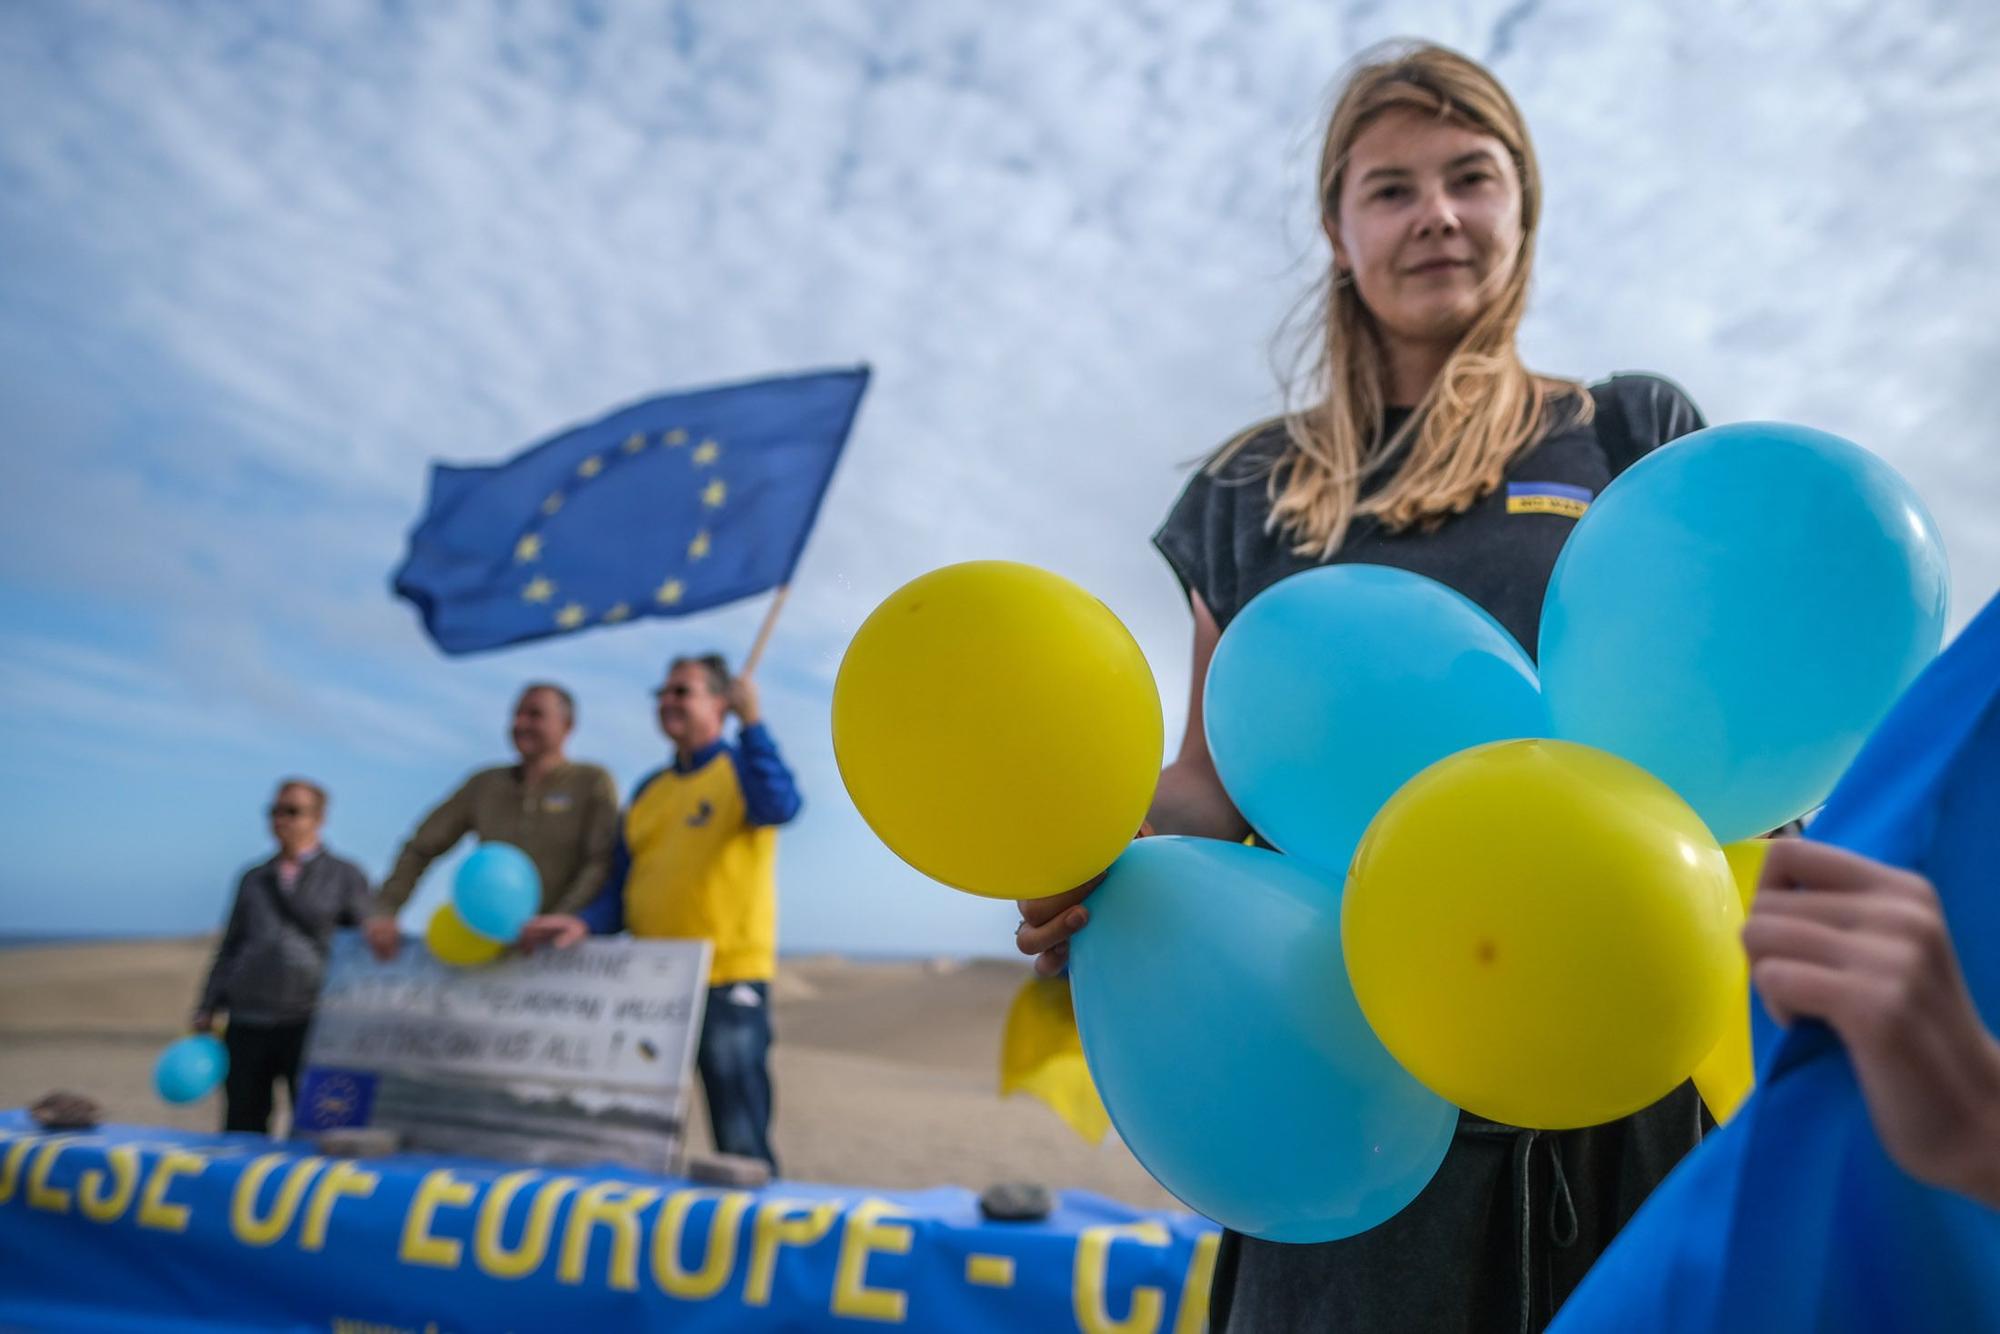 Manifestación de ucranianos en el mirador de las Dunas de Maspalomas